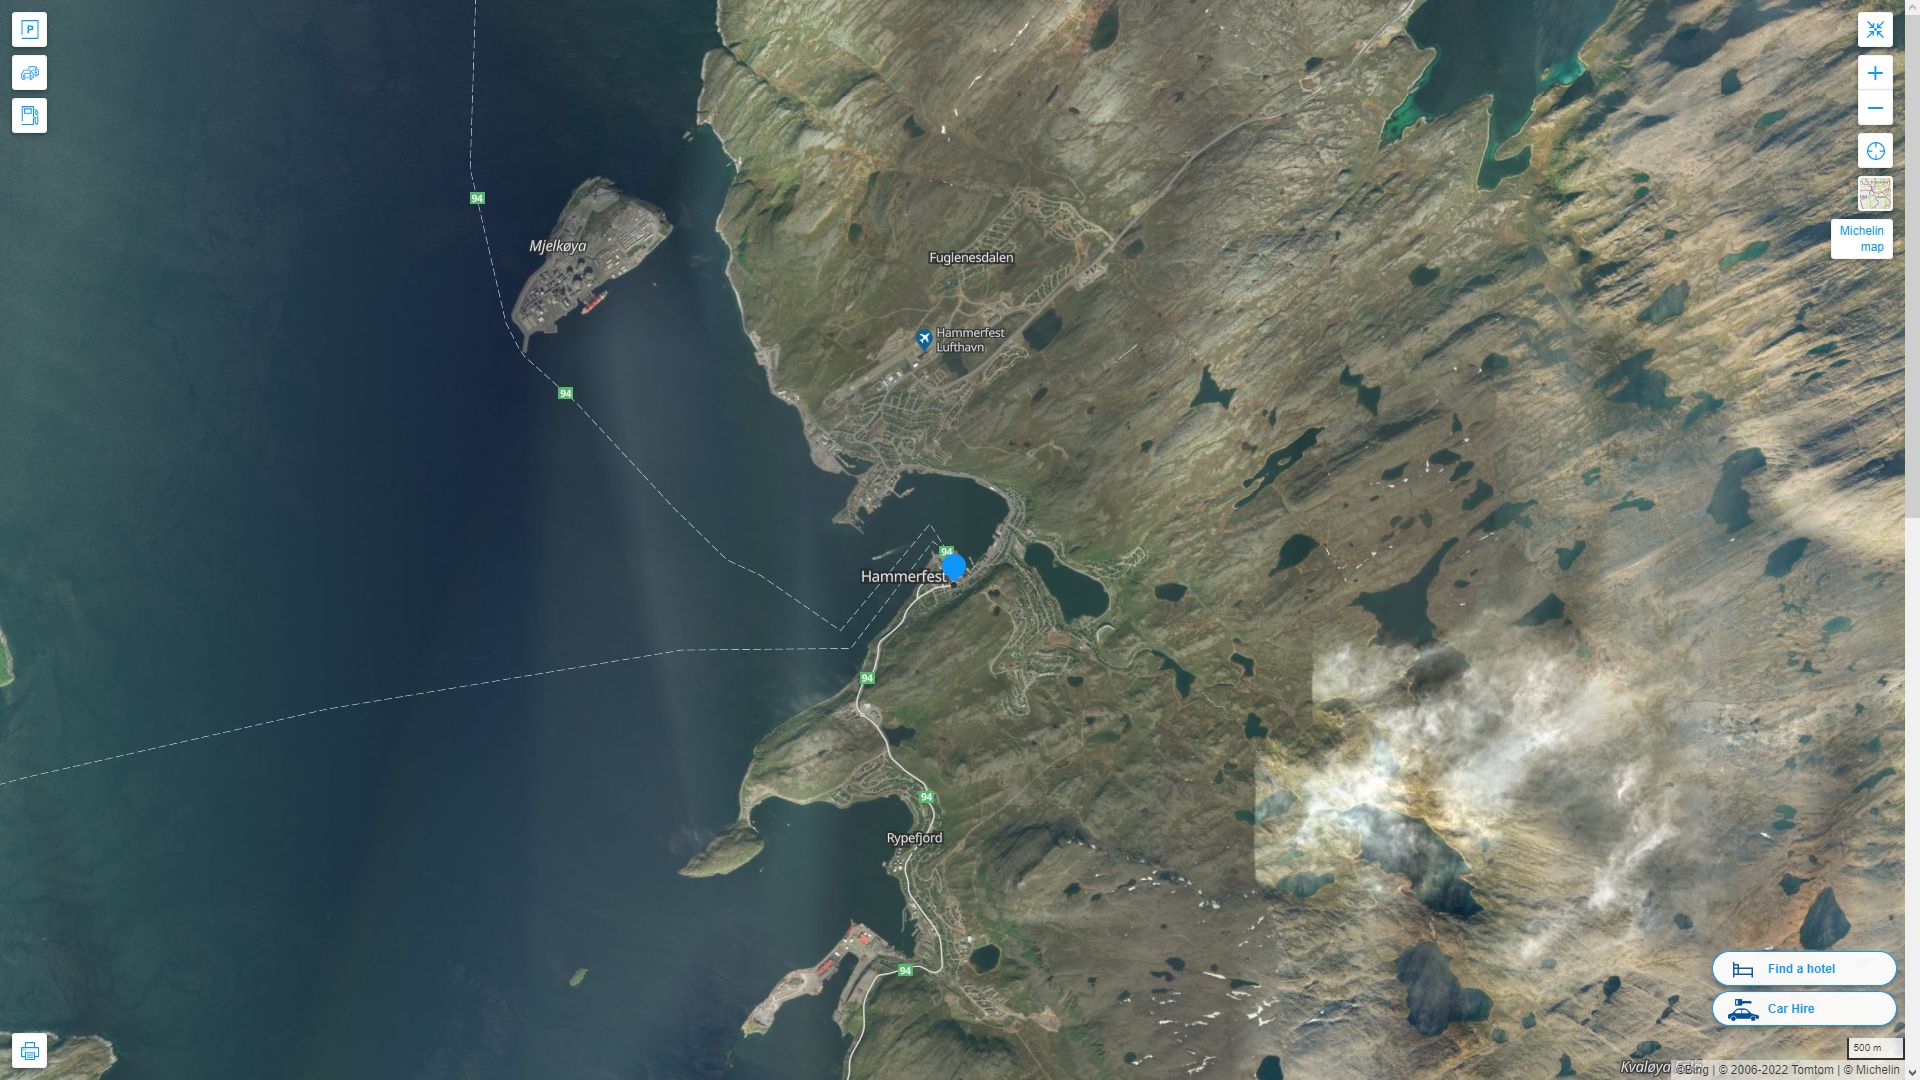 Hammerfest Norvege Autoroute et carte routiere avec vue satellite